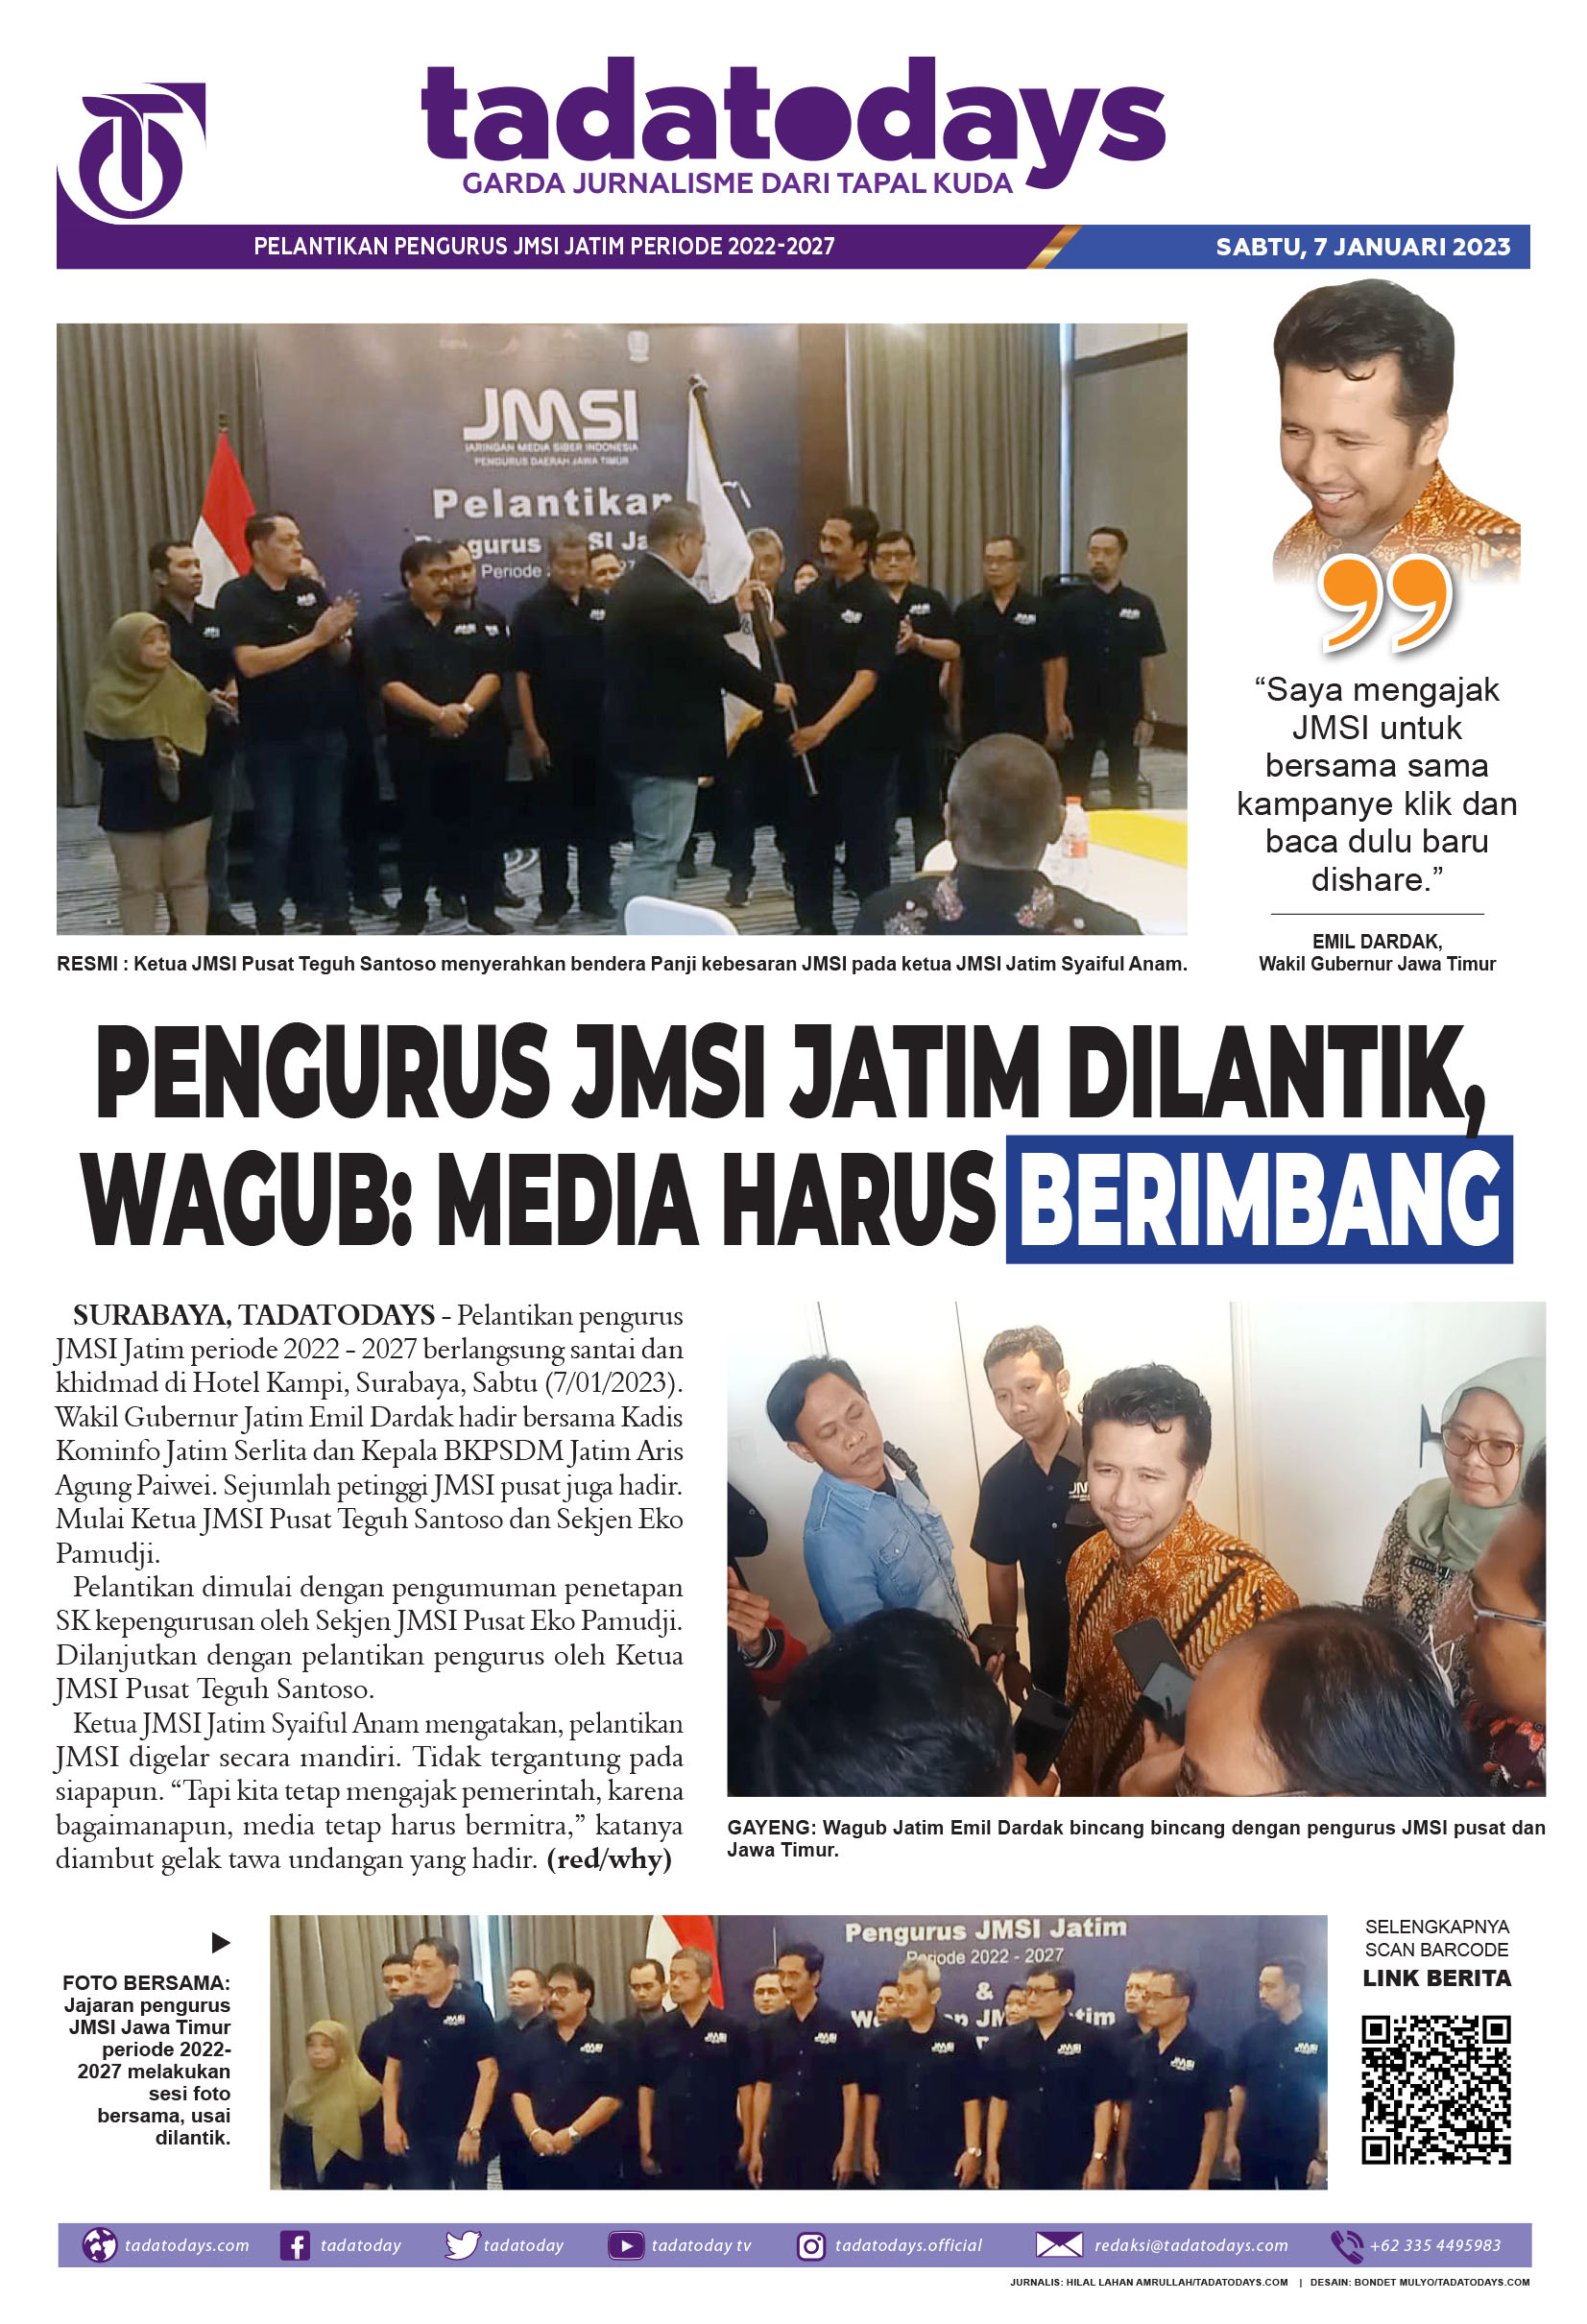 Pengurus JMSI Jawa Timur Dilantik, Wagub: Media Harus Berimbang